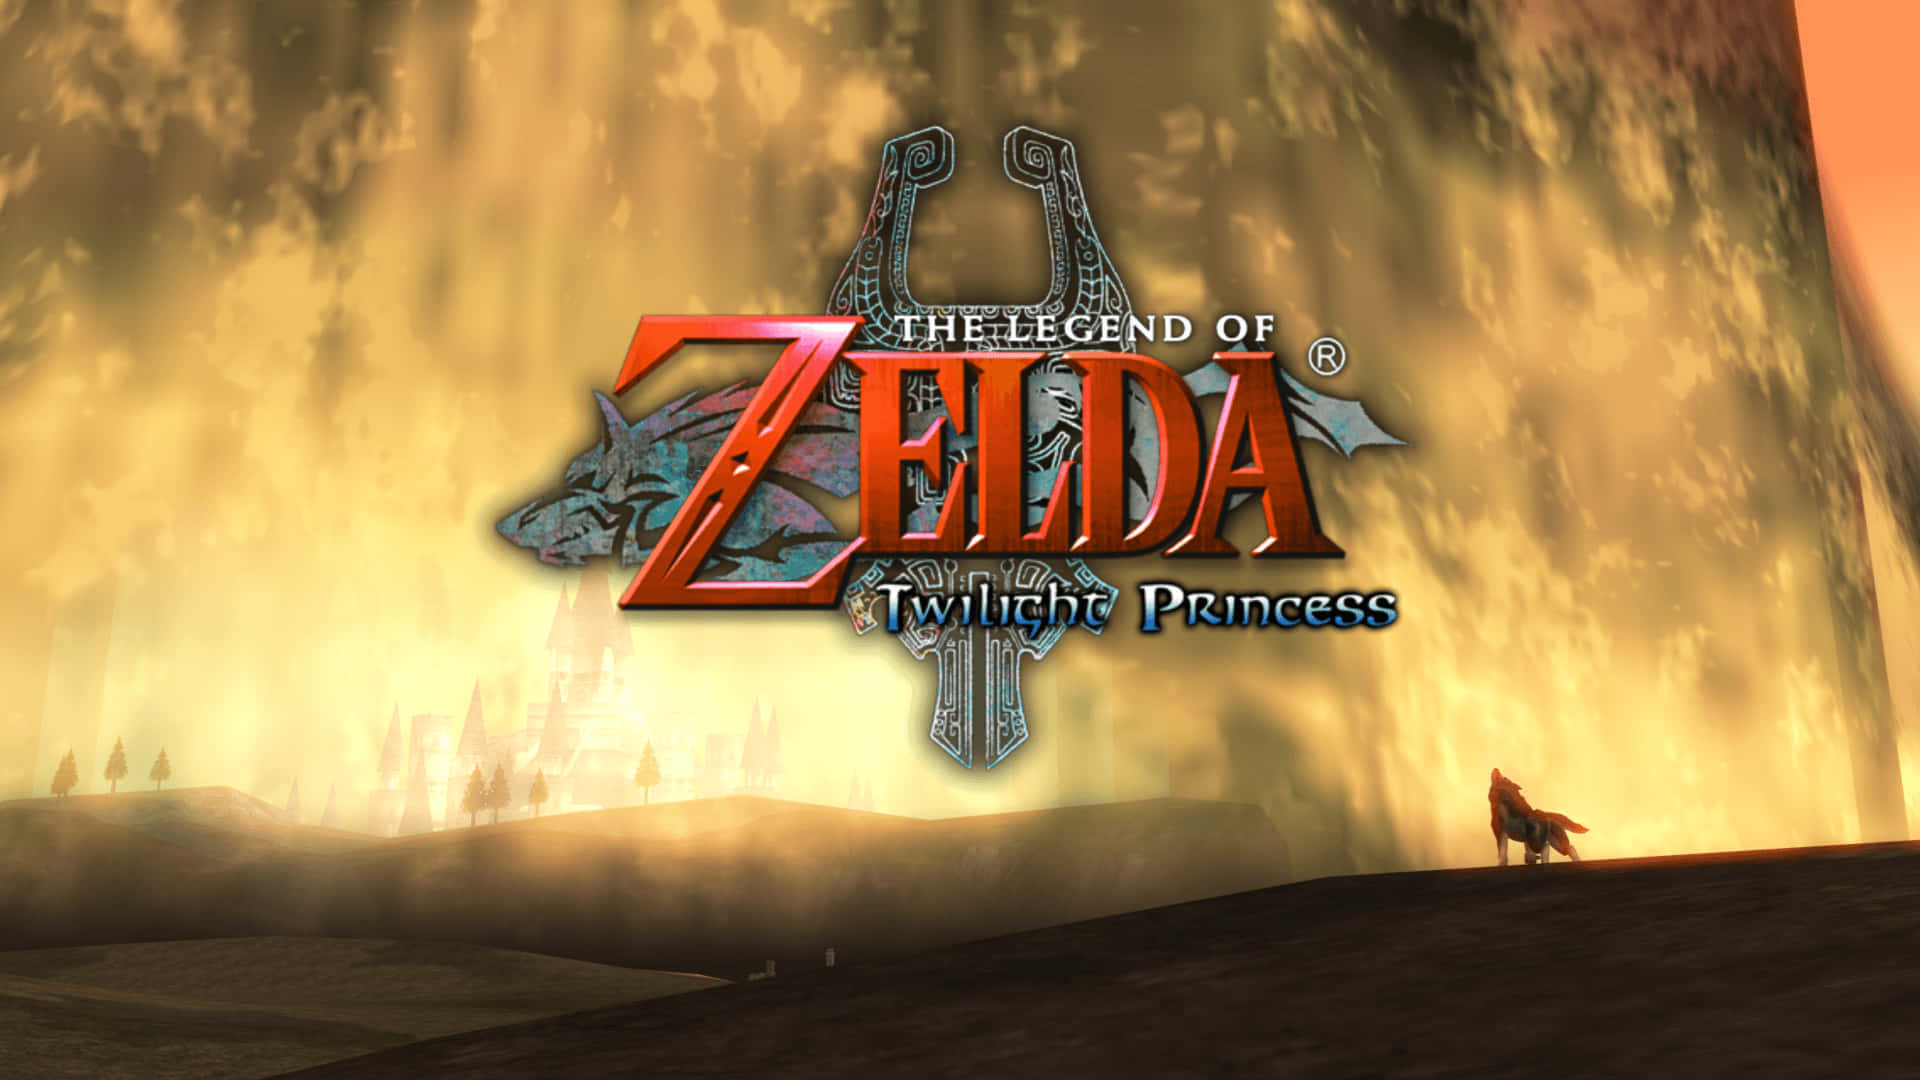 Linktritt In Legend Of Zelda: Twilight Princess Gegen Hyrule An. Wallpaper